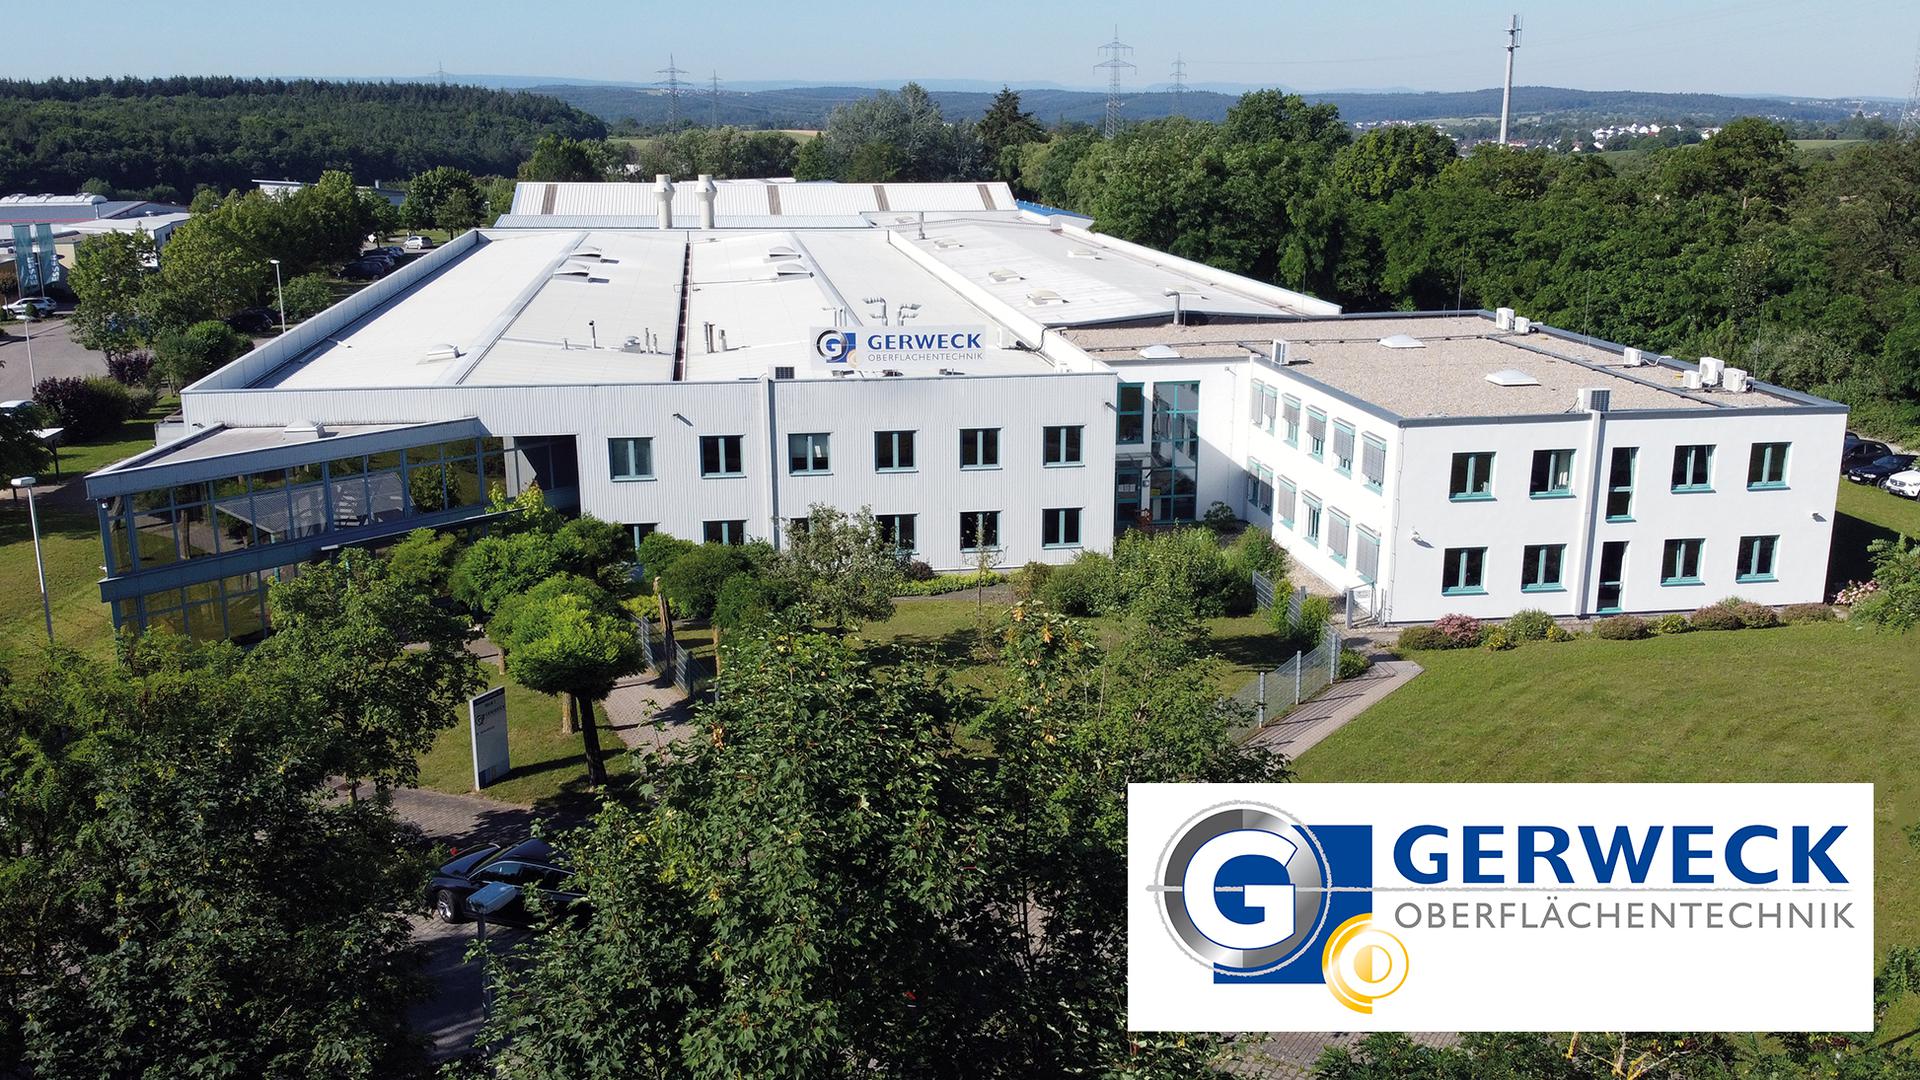 Ausbildung bei Gerweck GmbH Oberflächentechnik.